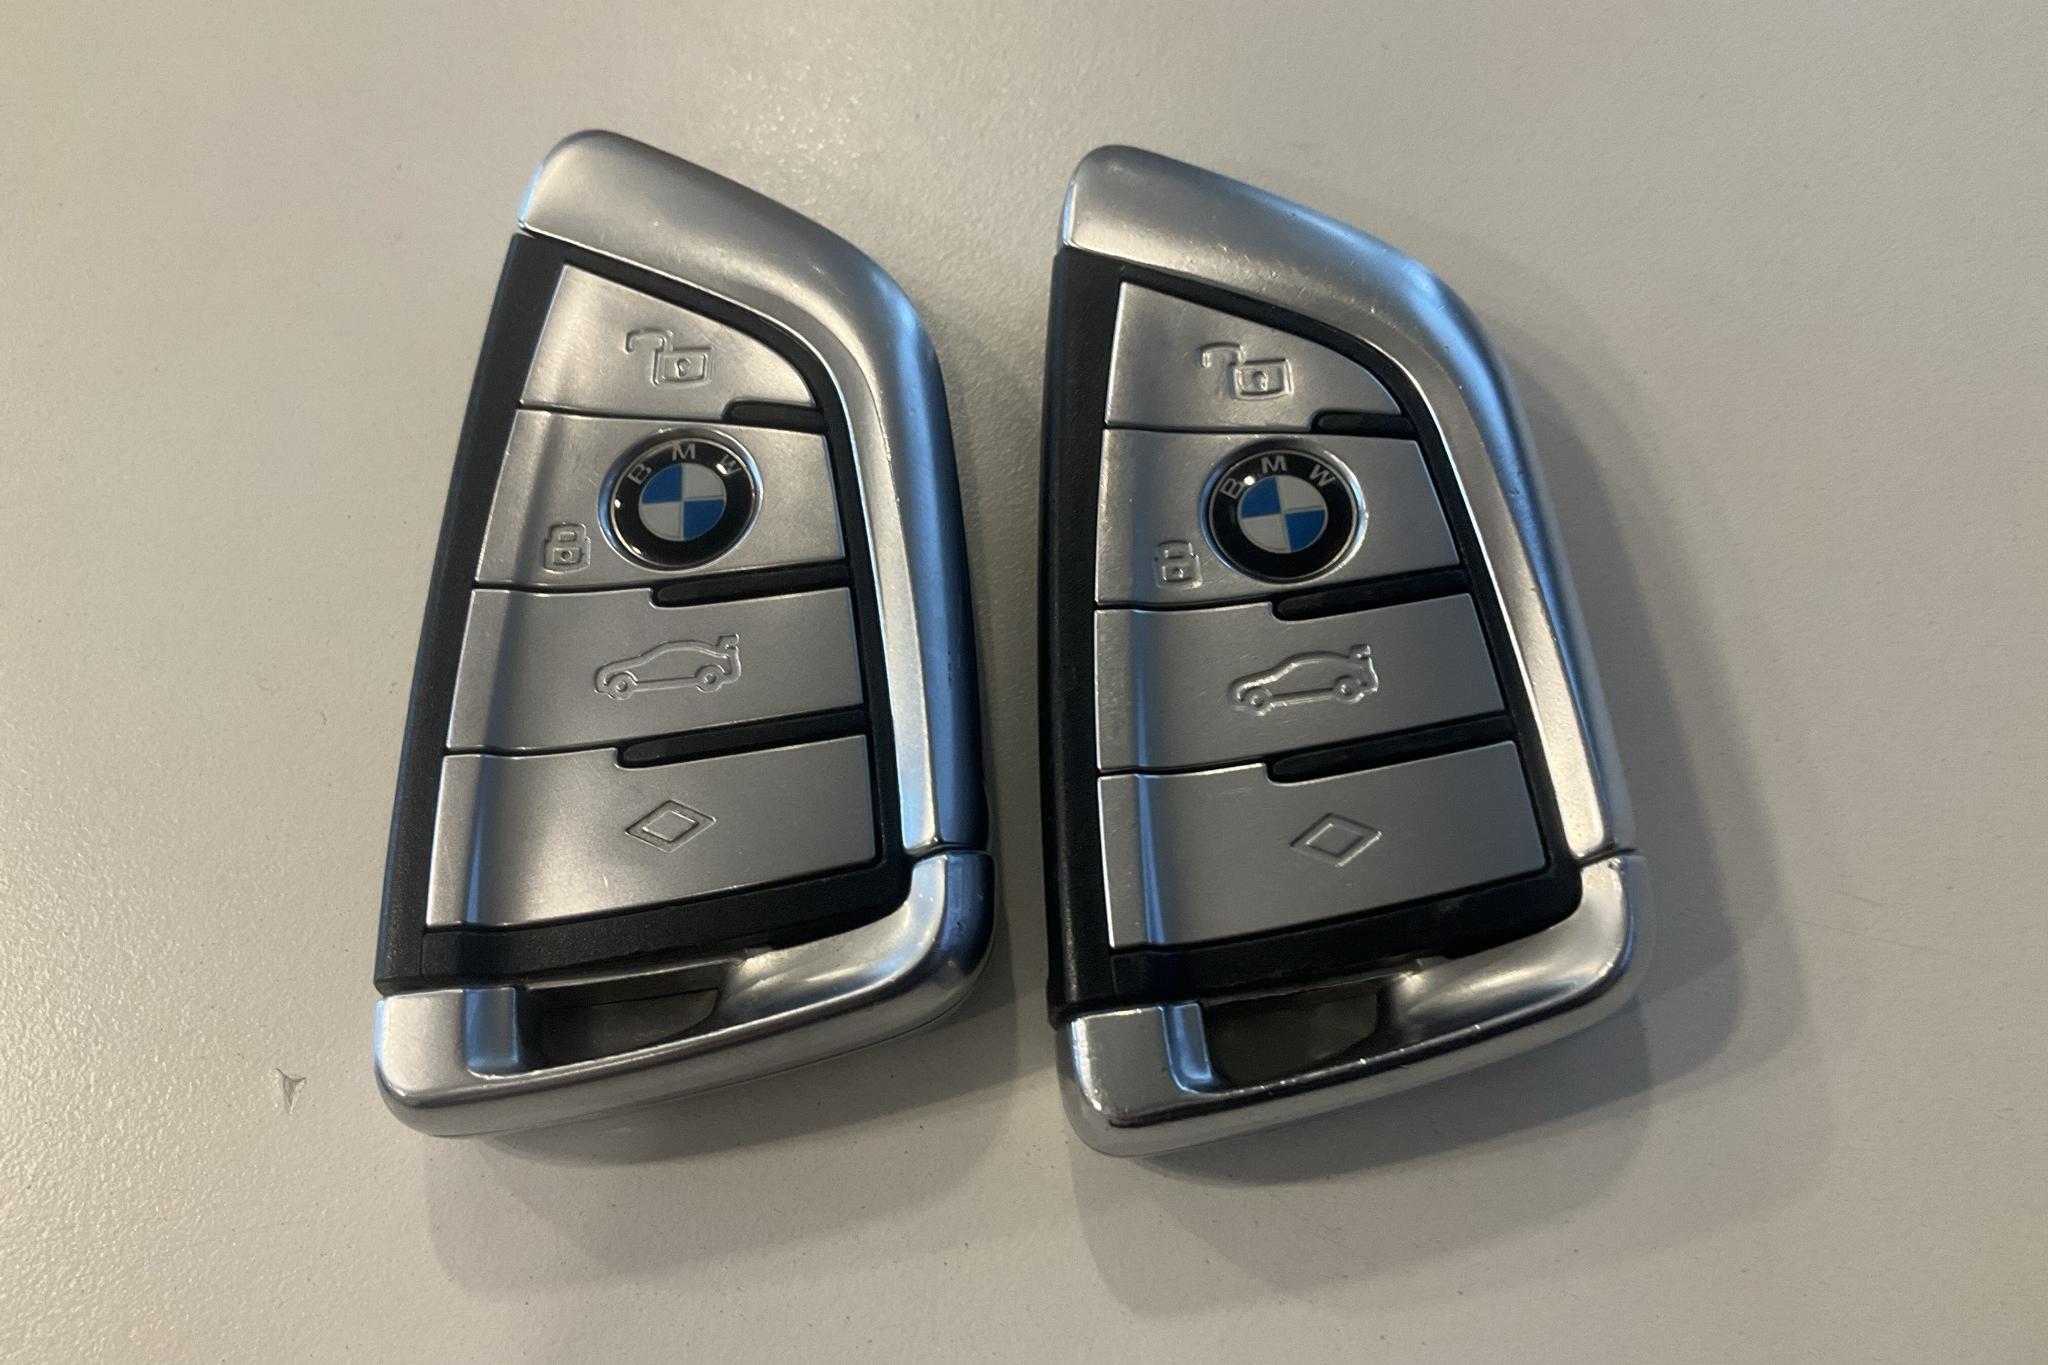 BMW X5 xDrive45e, G05 (394hk) - 4 187 mil - Automat - grå - 2020